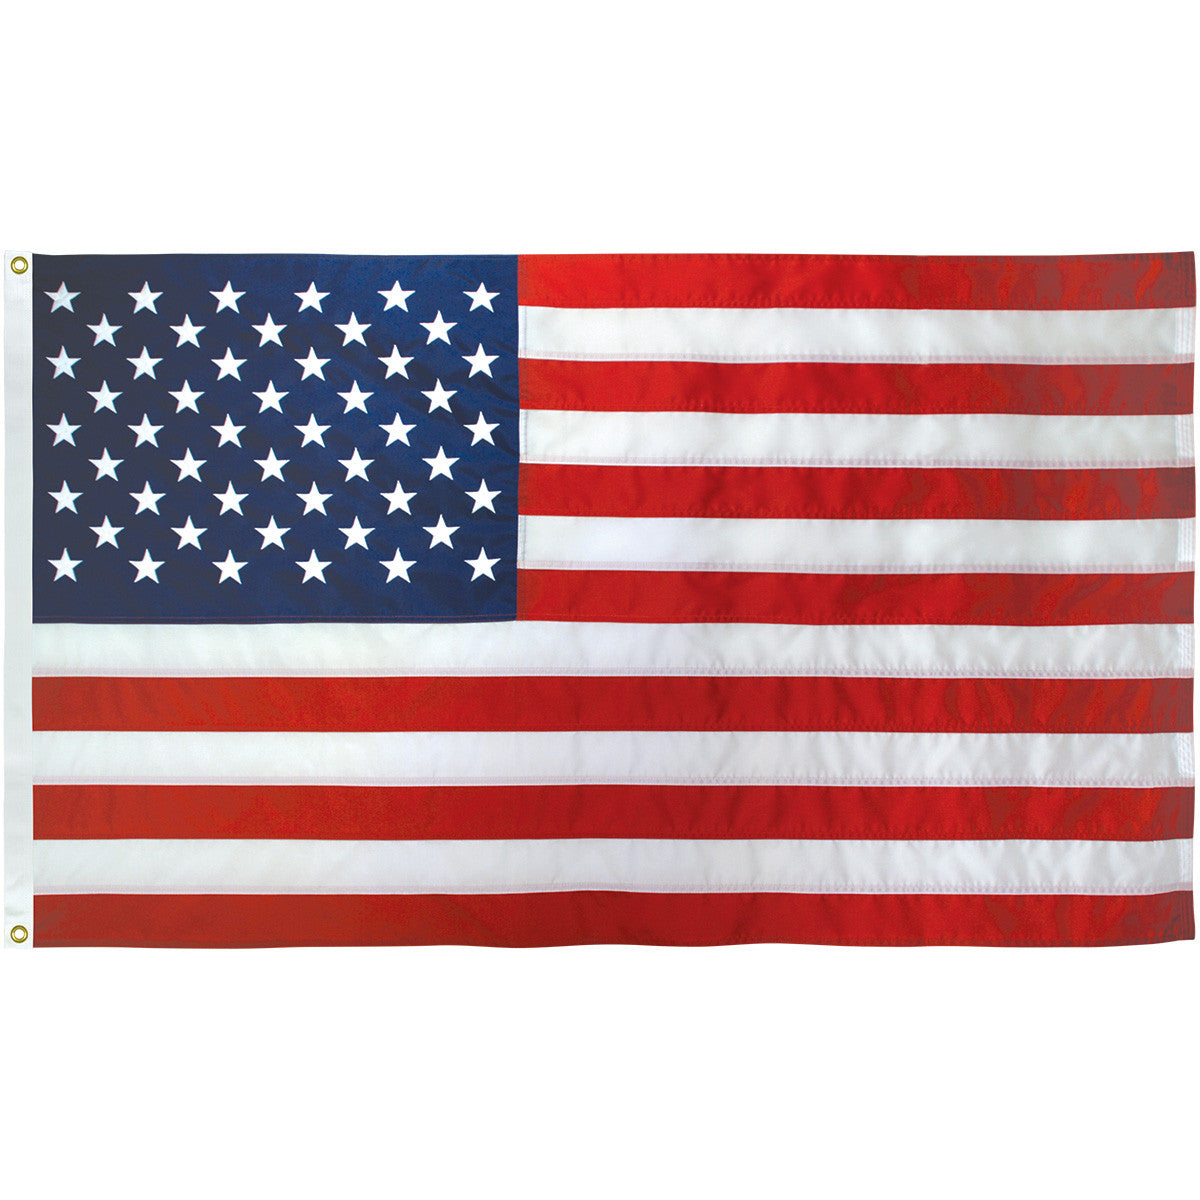 3' x 5' U.S. Nylon Flag